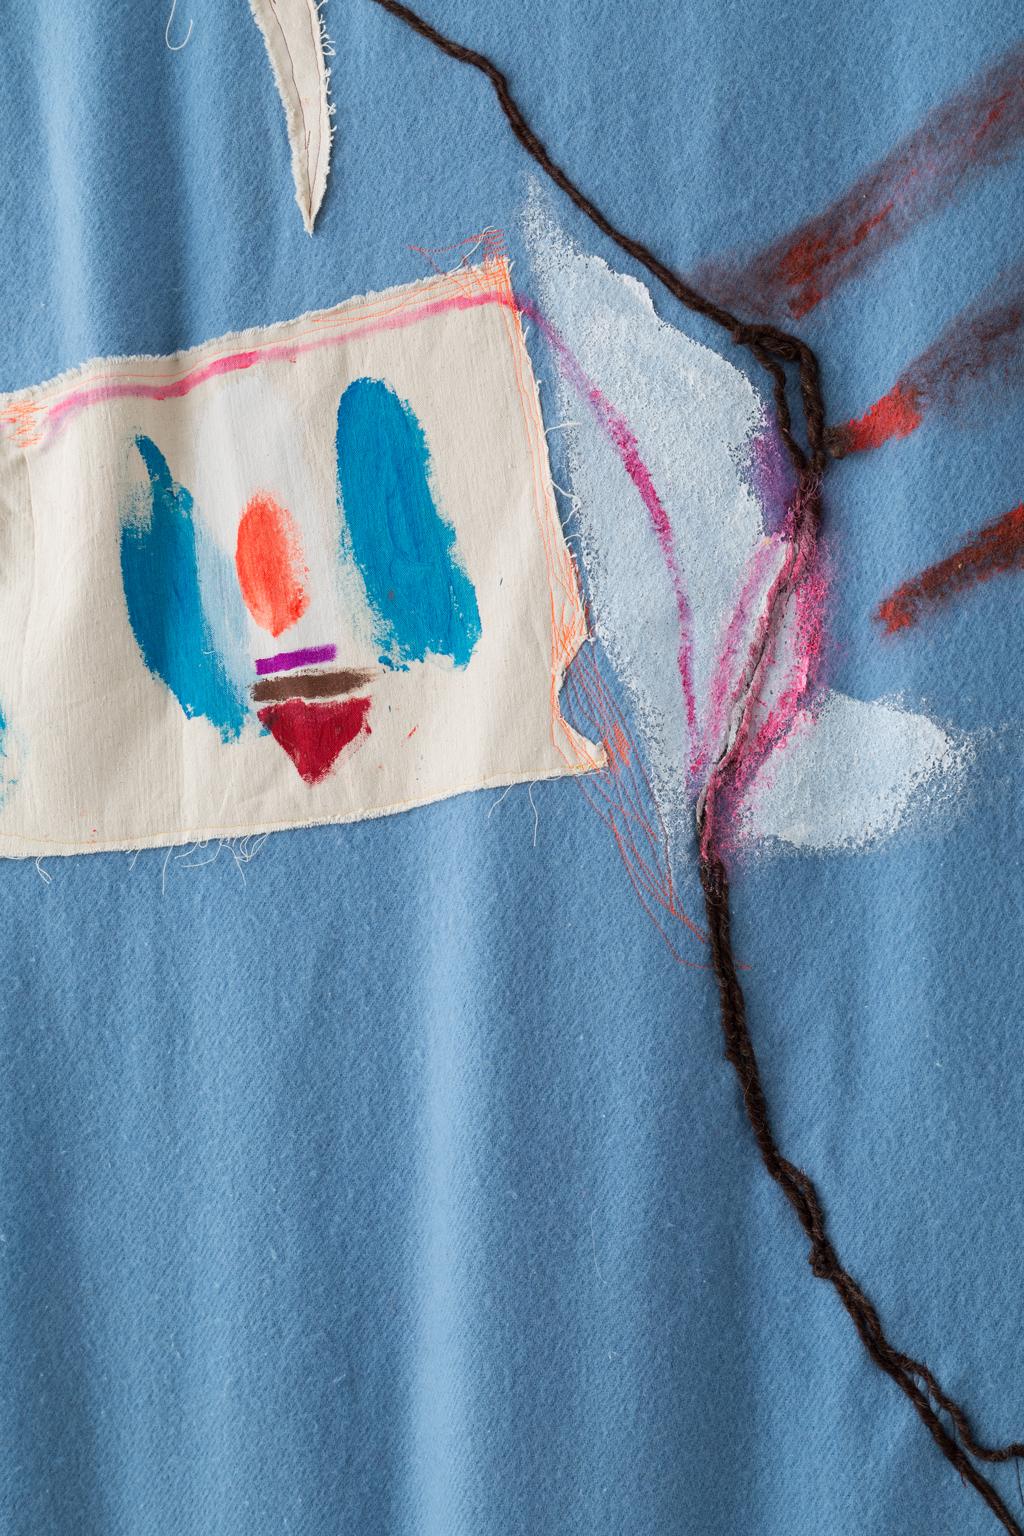 Im Rahmen des Blanket Project kreiert Naomi Clark Quilt Paintings, wie sie es nennt. Sie haucht alten Campingdecken aus Wolle und Baumwolle, die sie bei Ebay, auf Flohmärkten und bei Garagenverkäufen findet, neues Leben ein. Naomi beschreibt ihren